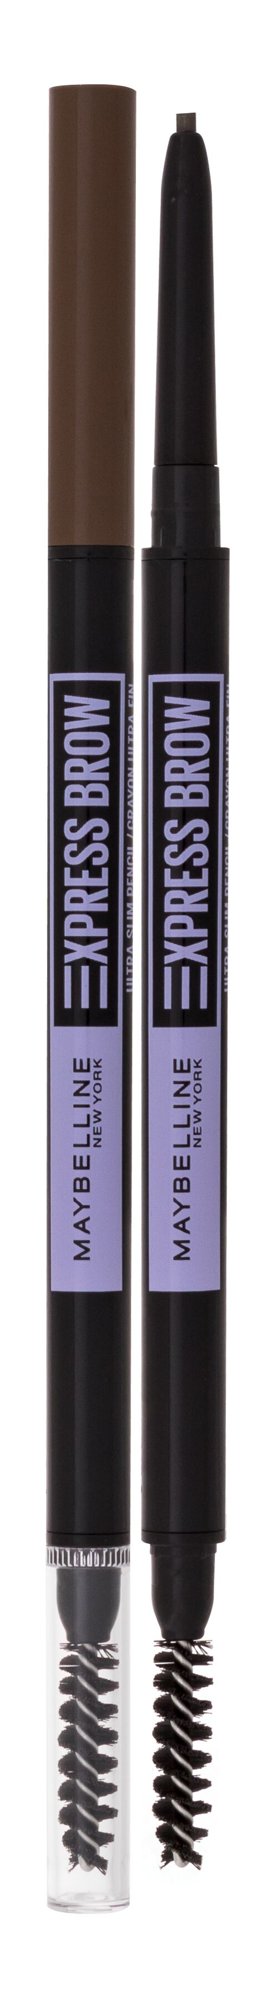 Maybelline Express Brow Ultra Slim 9g antakių pieštukas